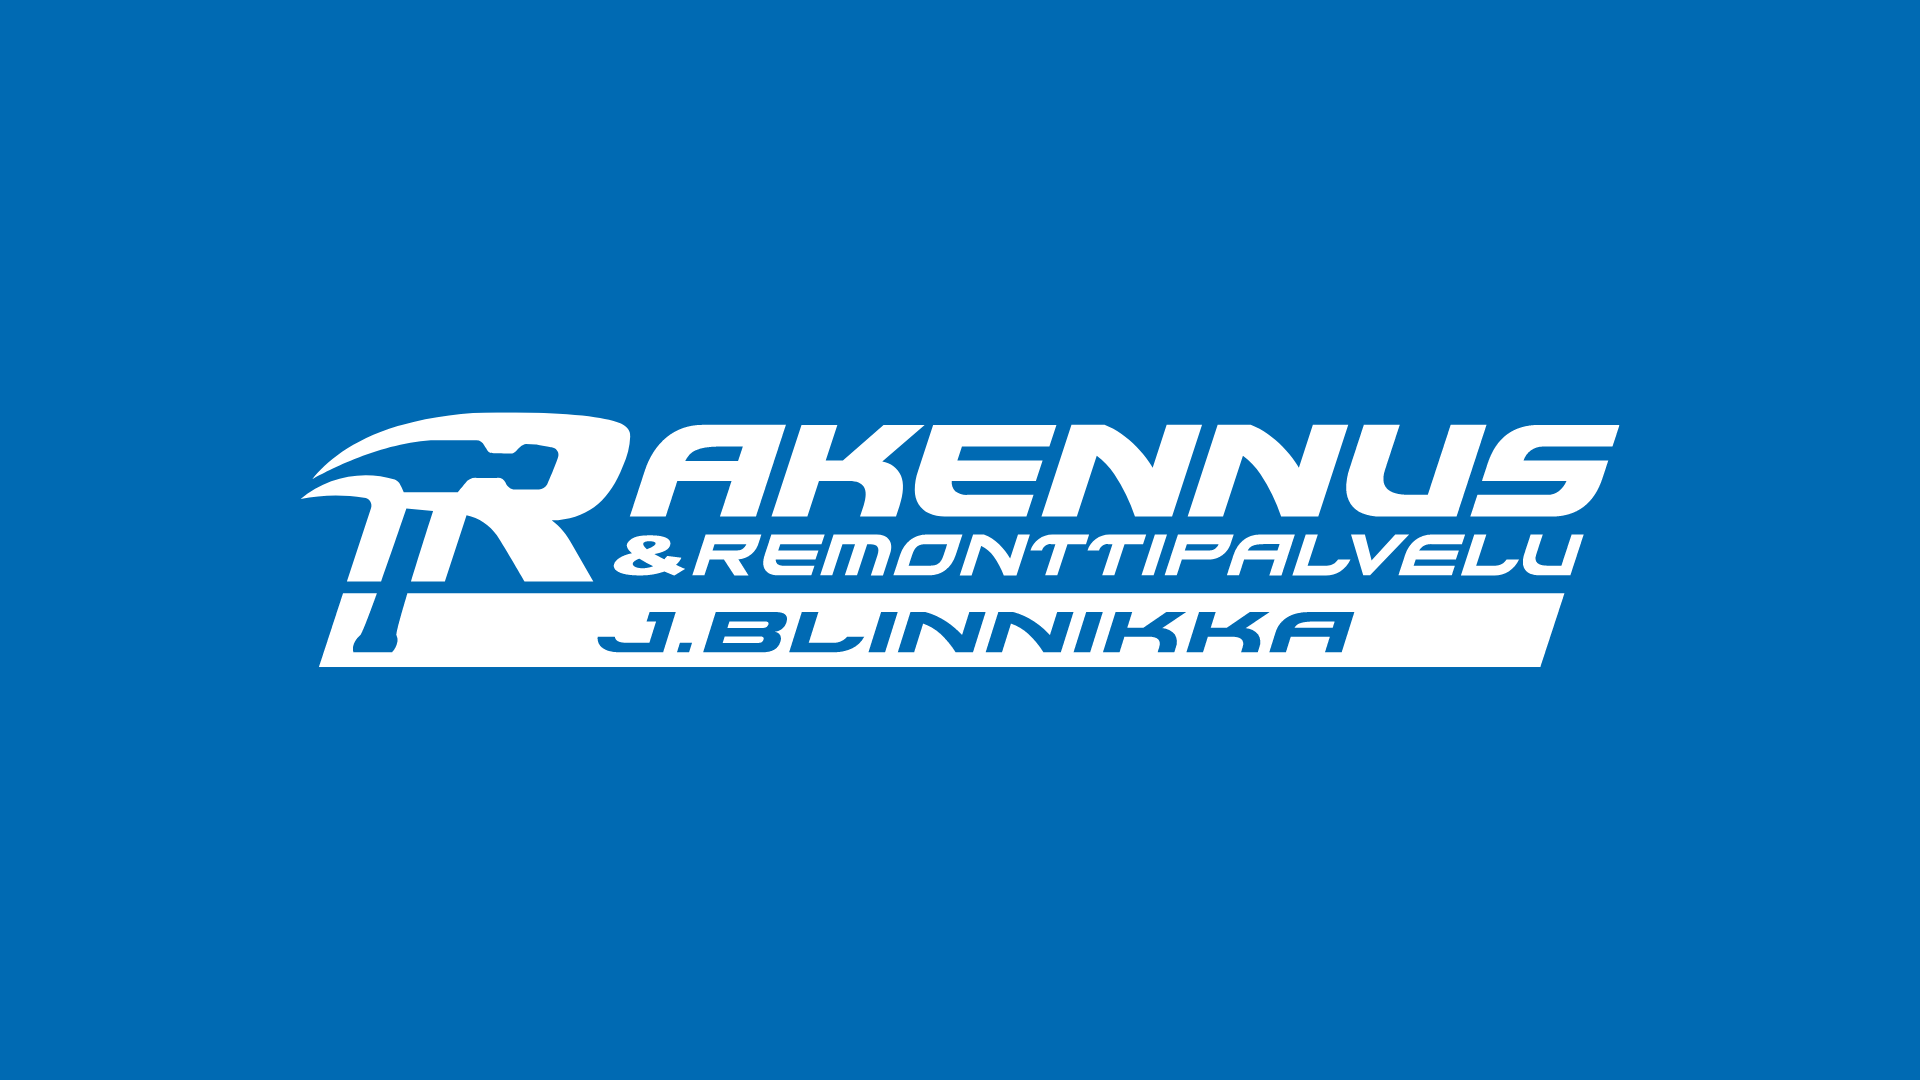 Rakennus & Remontointipalvelu Blinnikka